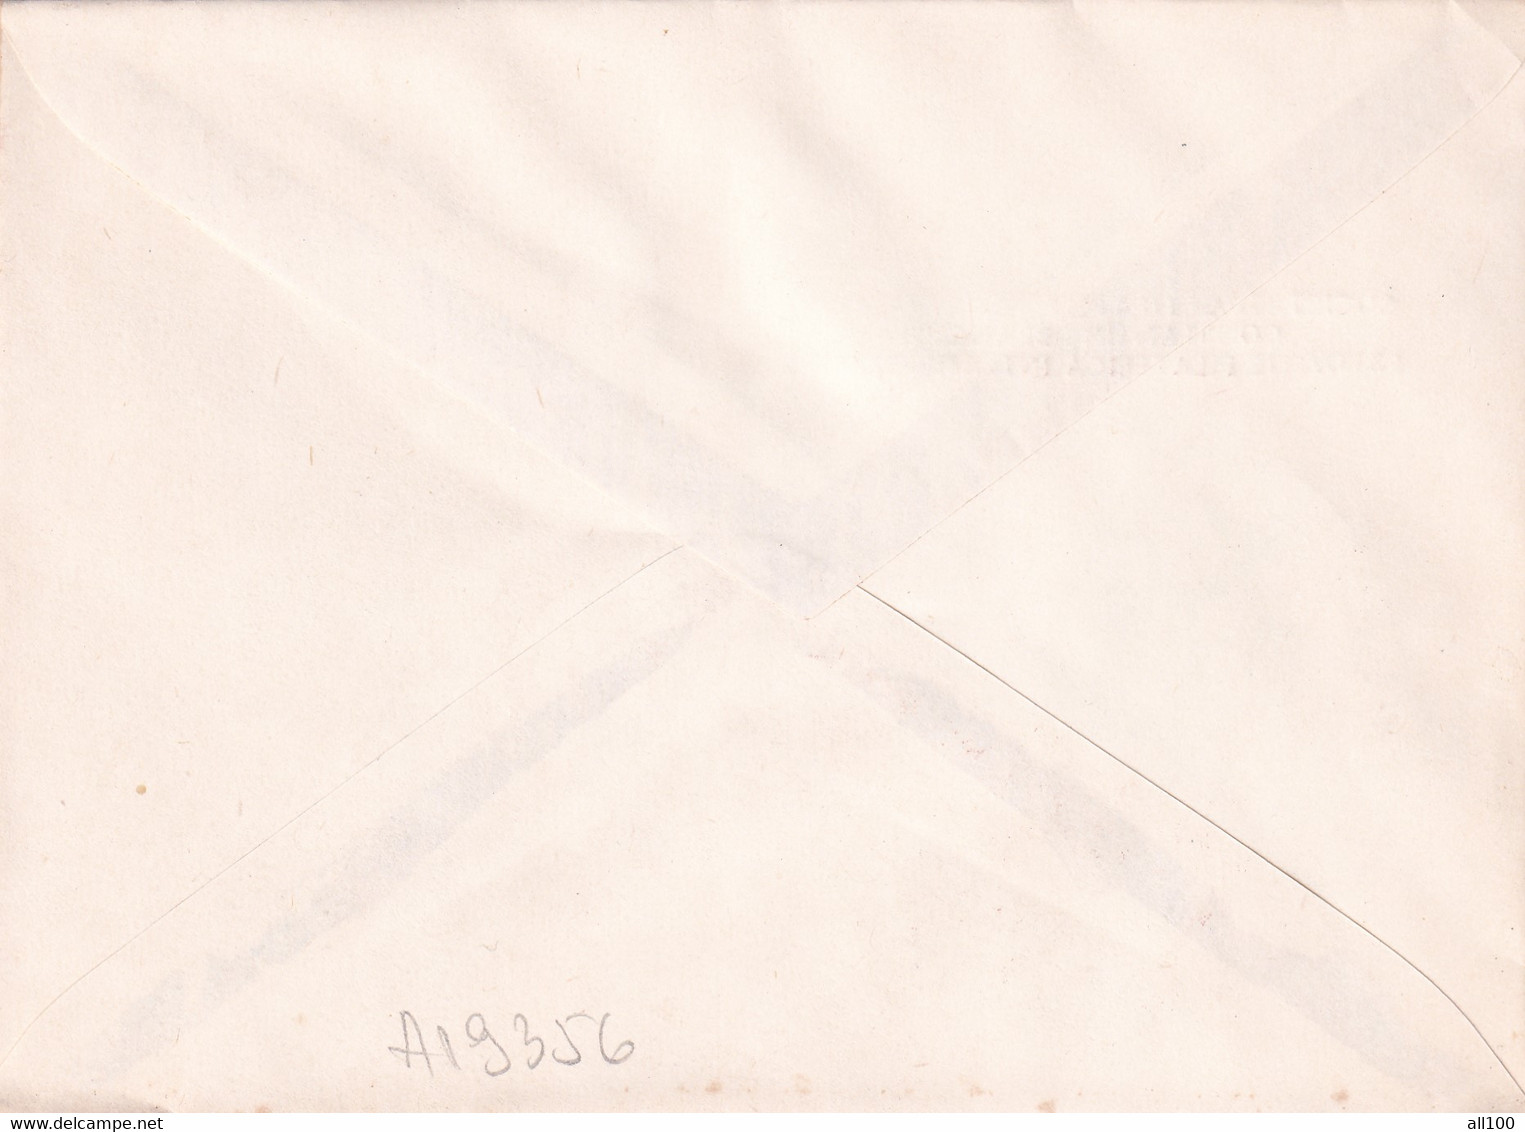 A19356 - CENTENARUL LICEULUI TUDOR VLADIMIRESCU TARGU JIU TIRGU-JIU COVER ENVELOPE UNUSED 1990 ROMANIA - Lettres & Documents